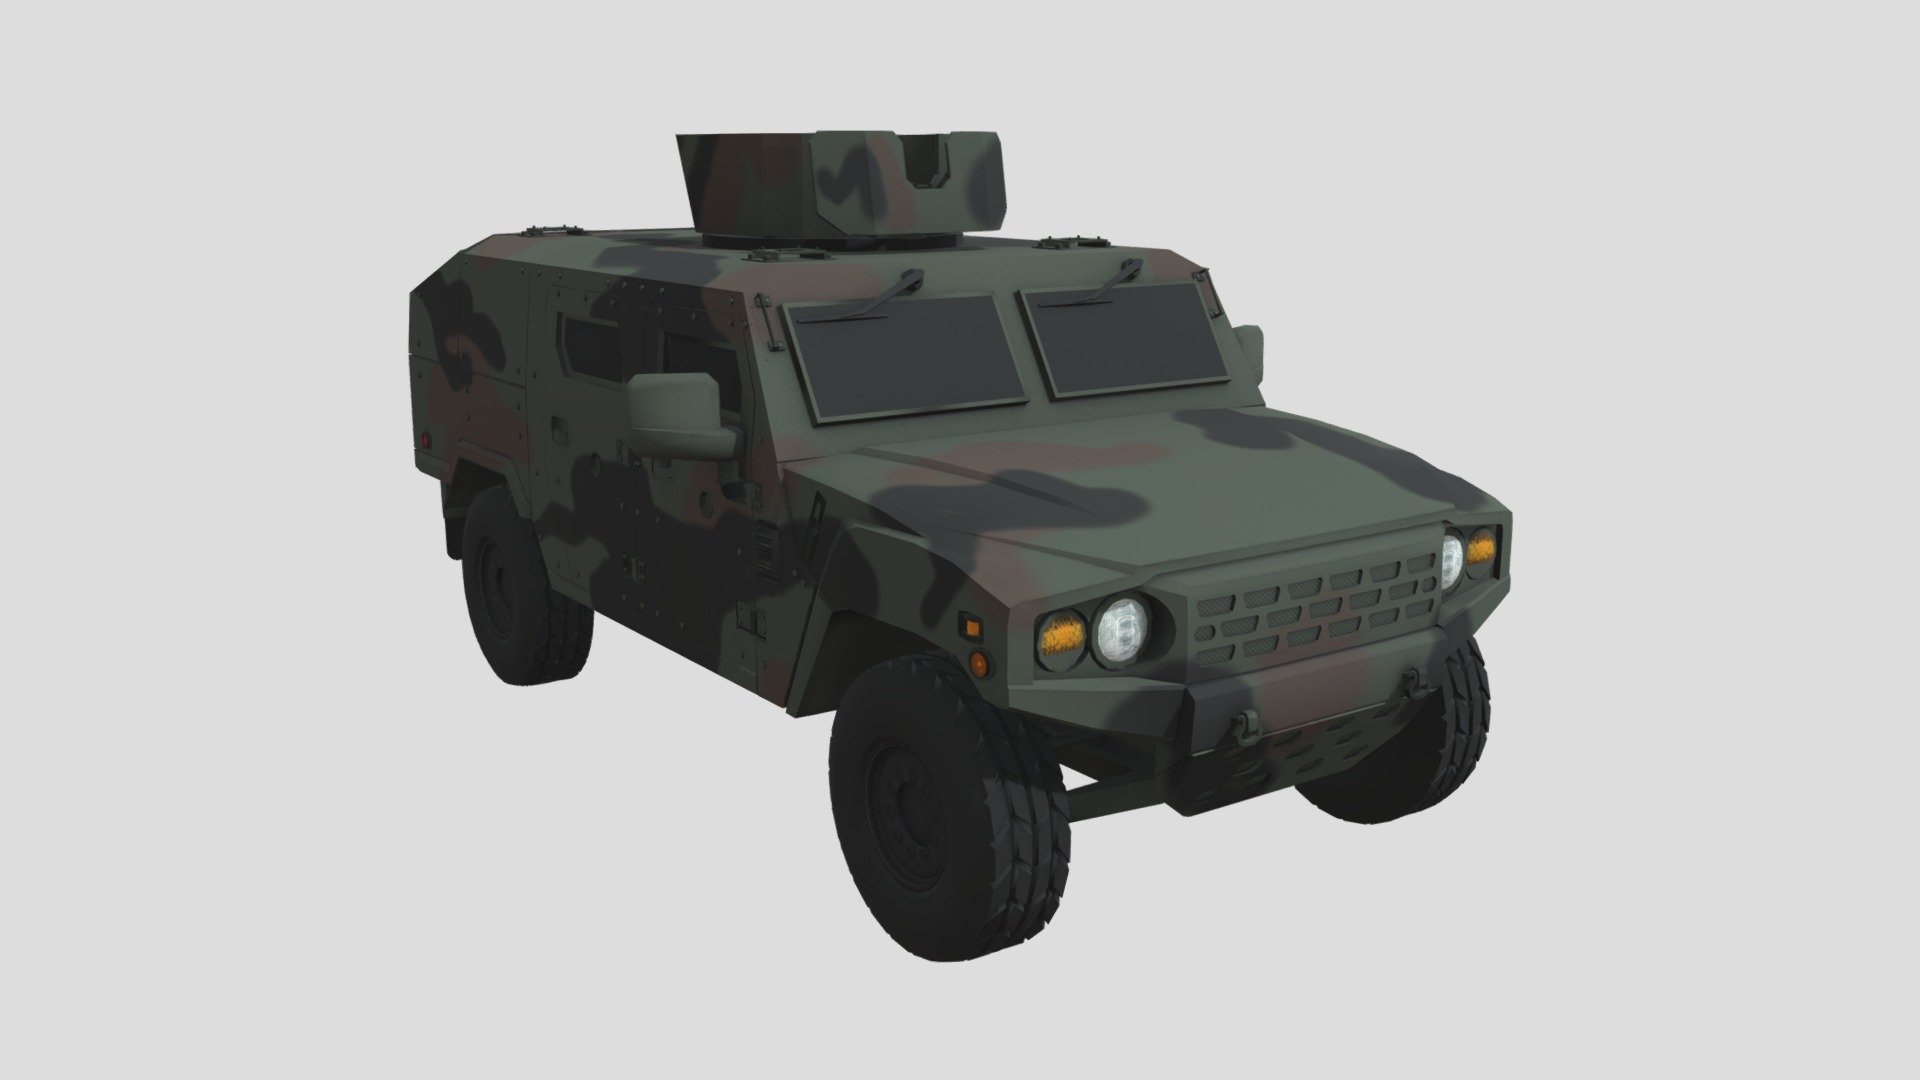 K-153 Armored Reconnaissance Vehicle - K-153 - 3D model by Uniform008 3d model